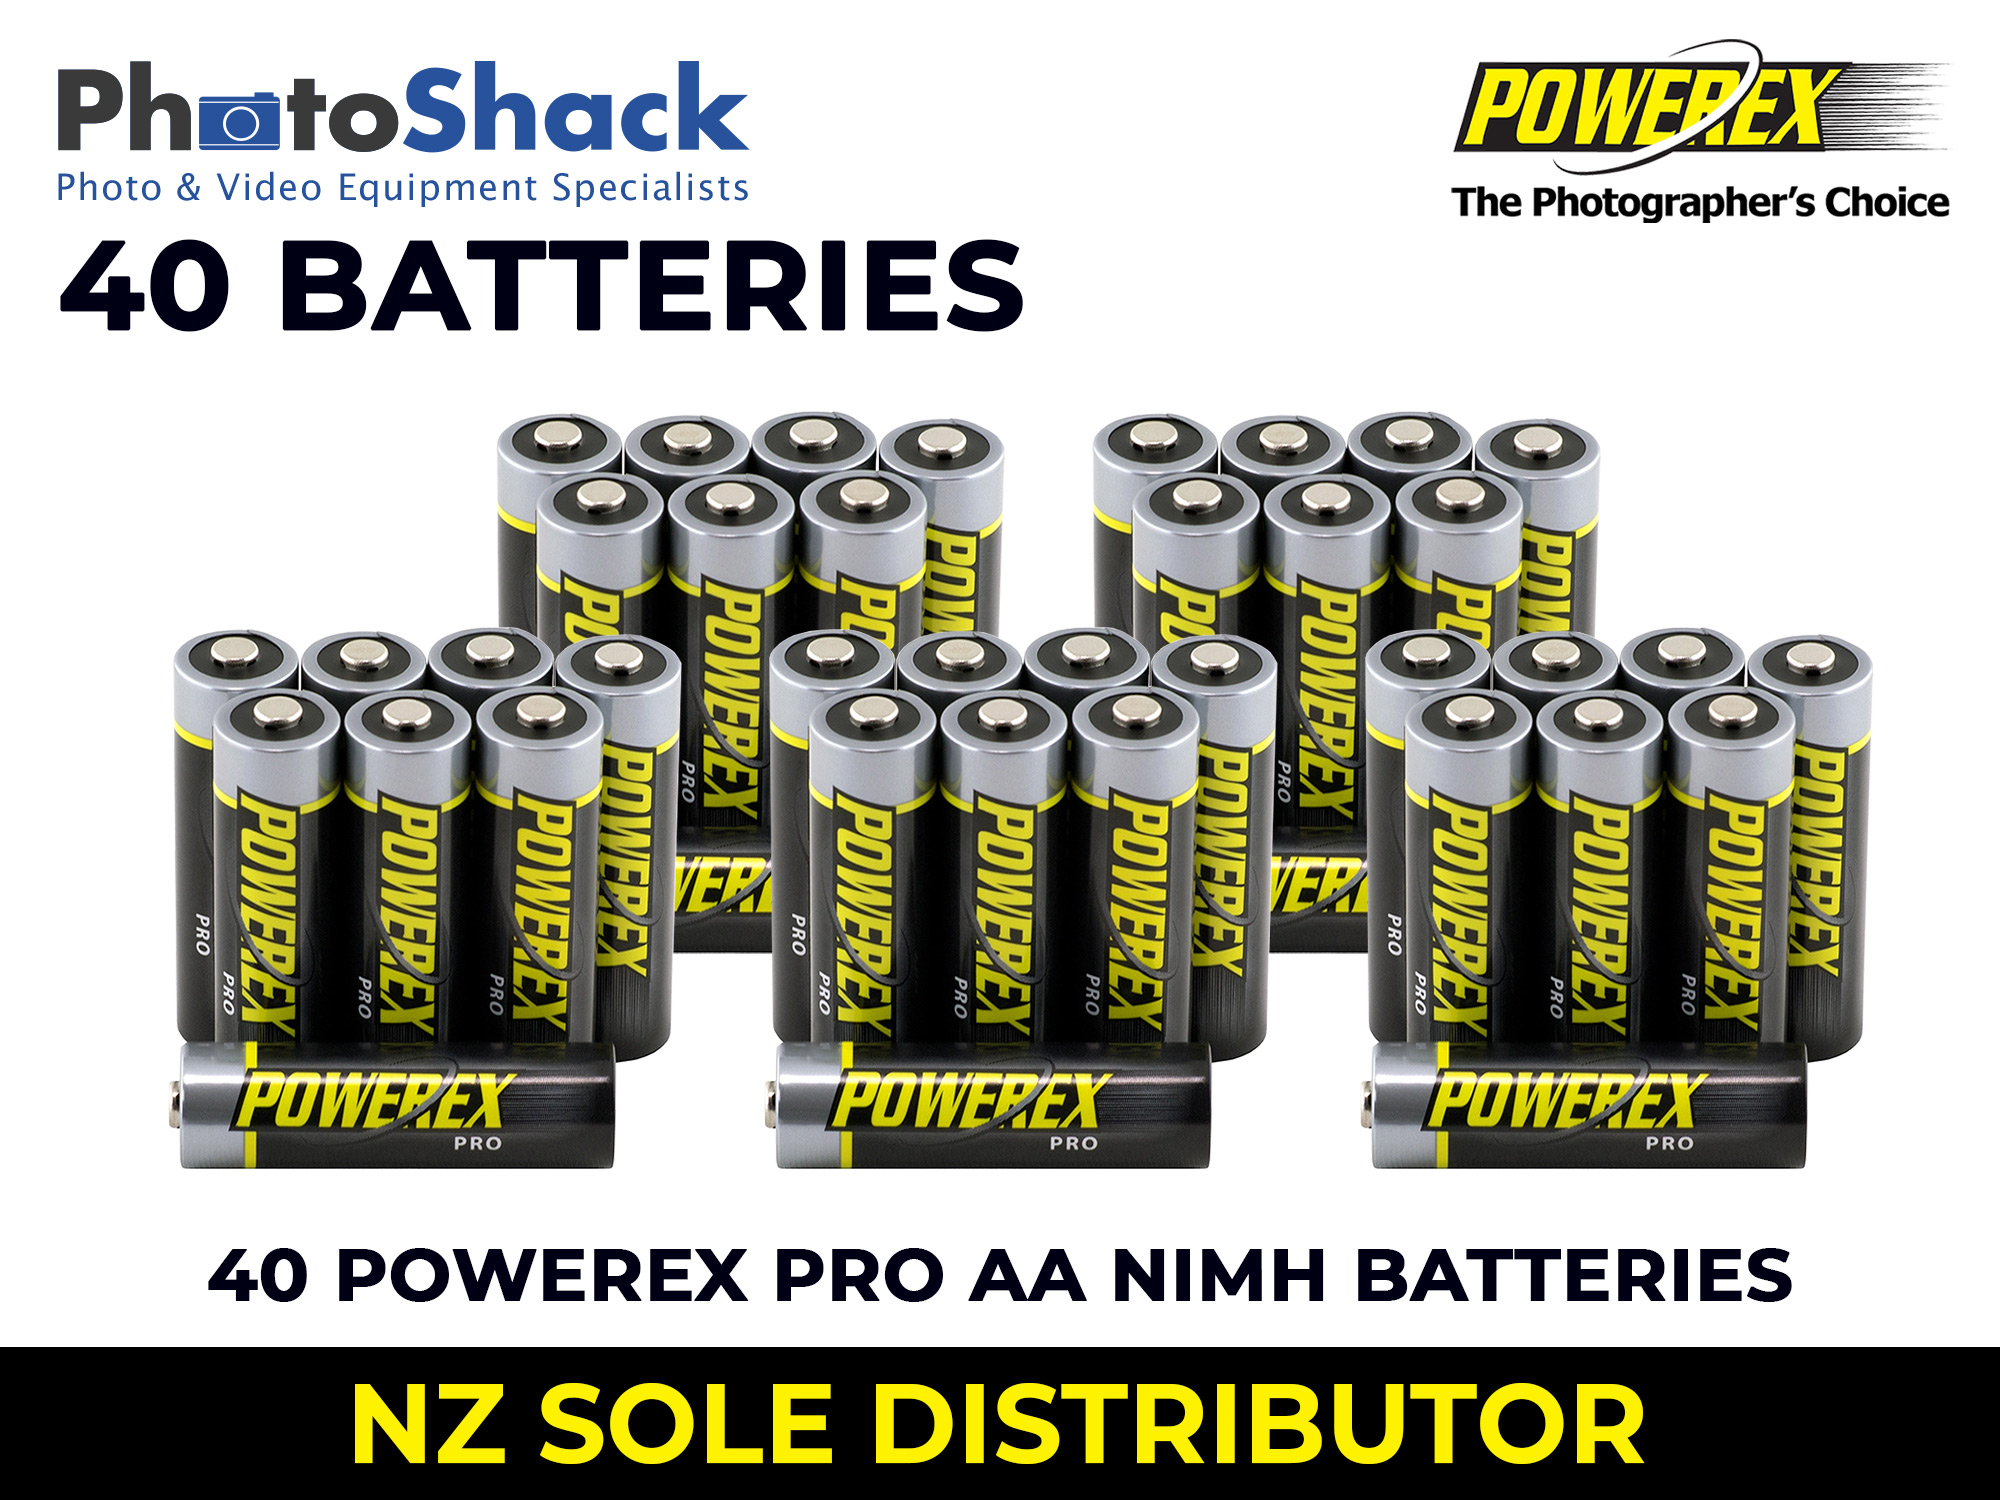 Maha Powerex PRO - AA Batteries - 2,700mAh 40 Batteries